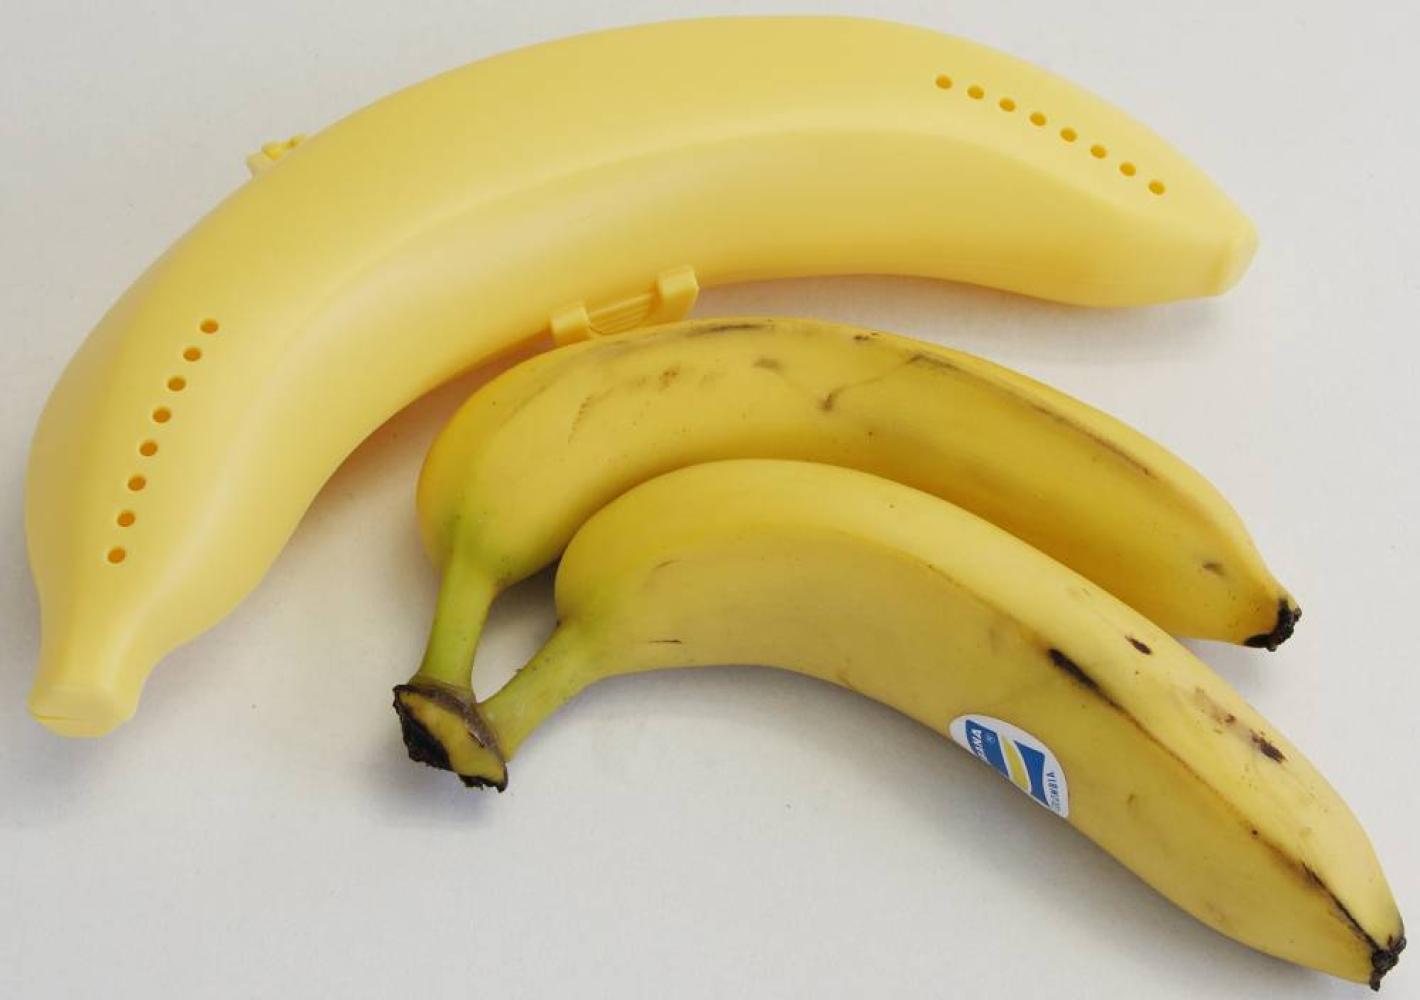 Fackelmann Bananentresor, Aufbewahrungsbox für Bananen, robuster Behälter aus Kunststoff (Farbe: Gelb), Menge: 1 Stück Bild 1